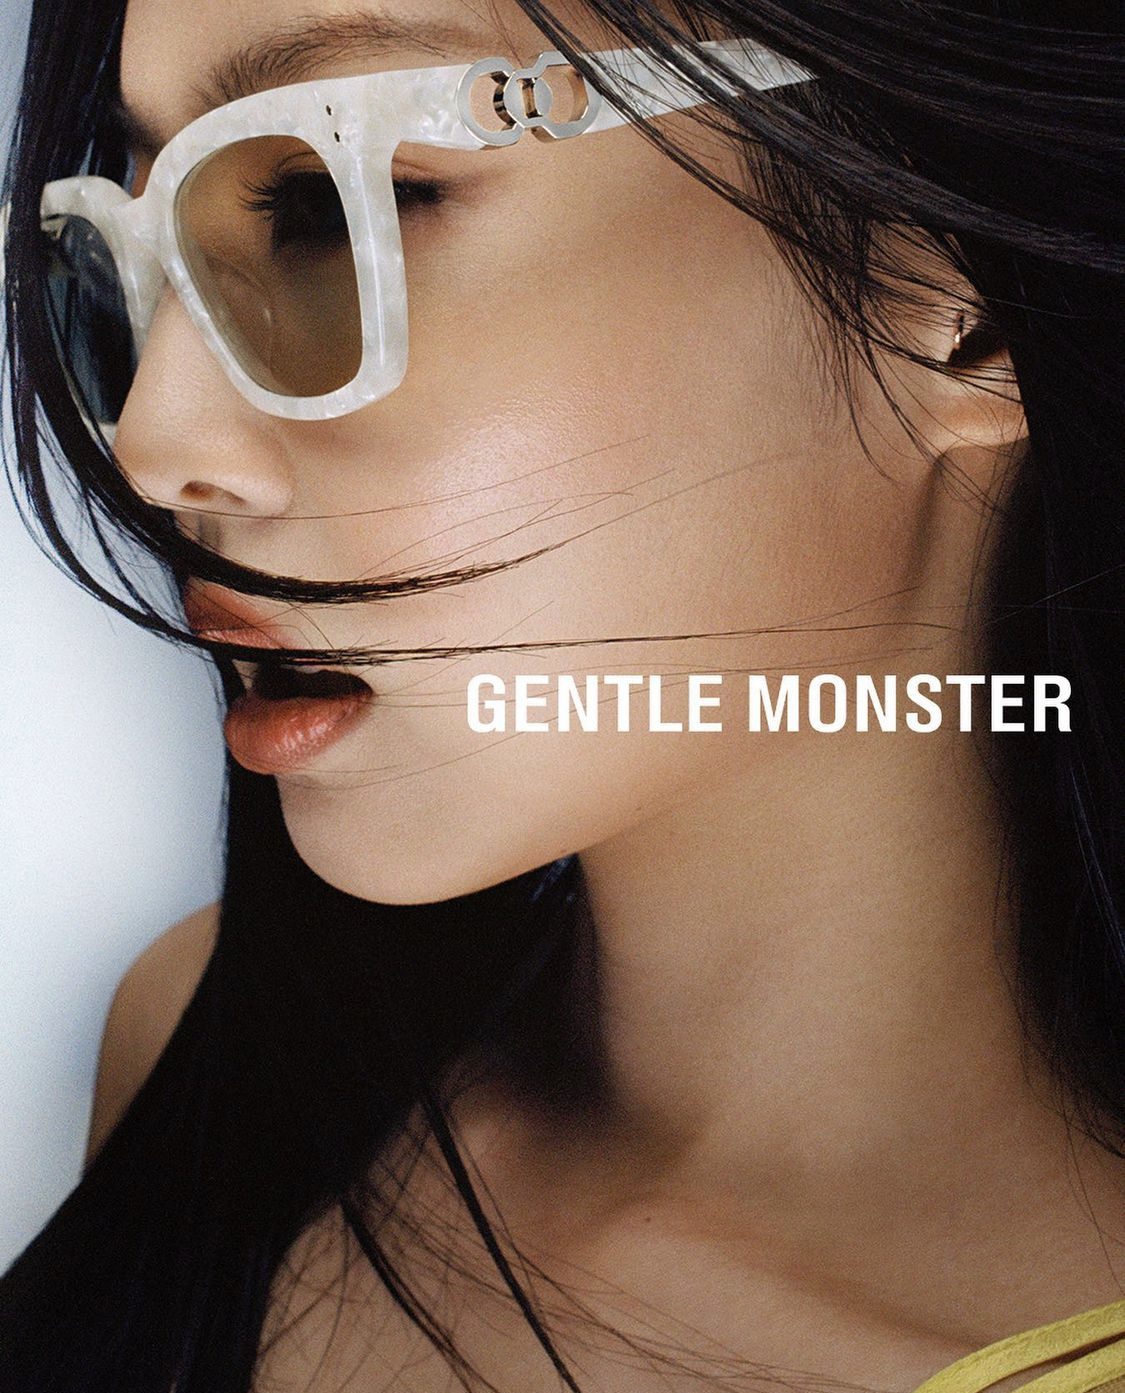 Thần thái đỉnh cao của Jennie trong bộ ảnh mới nhất của Gentle Monster.